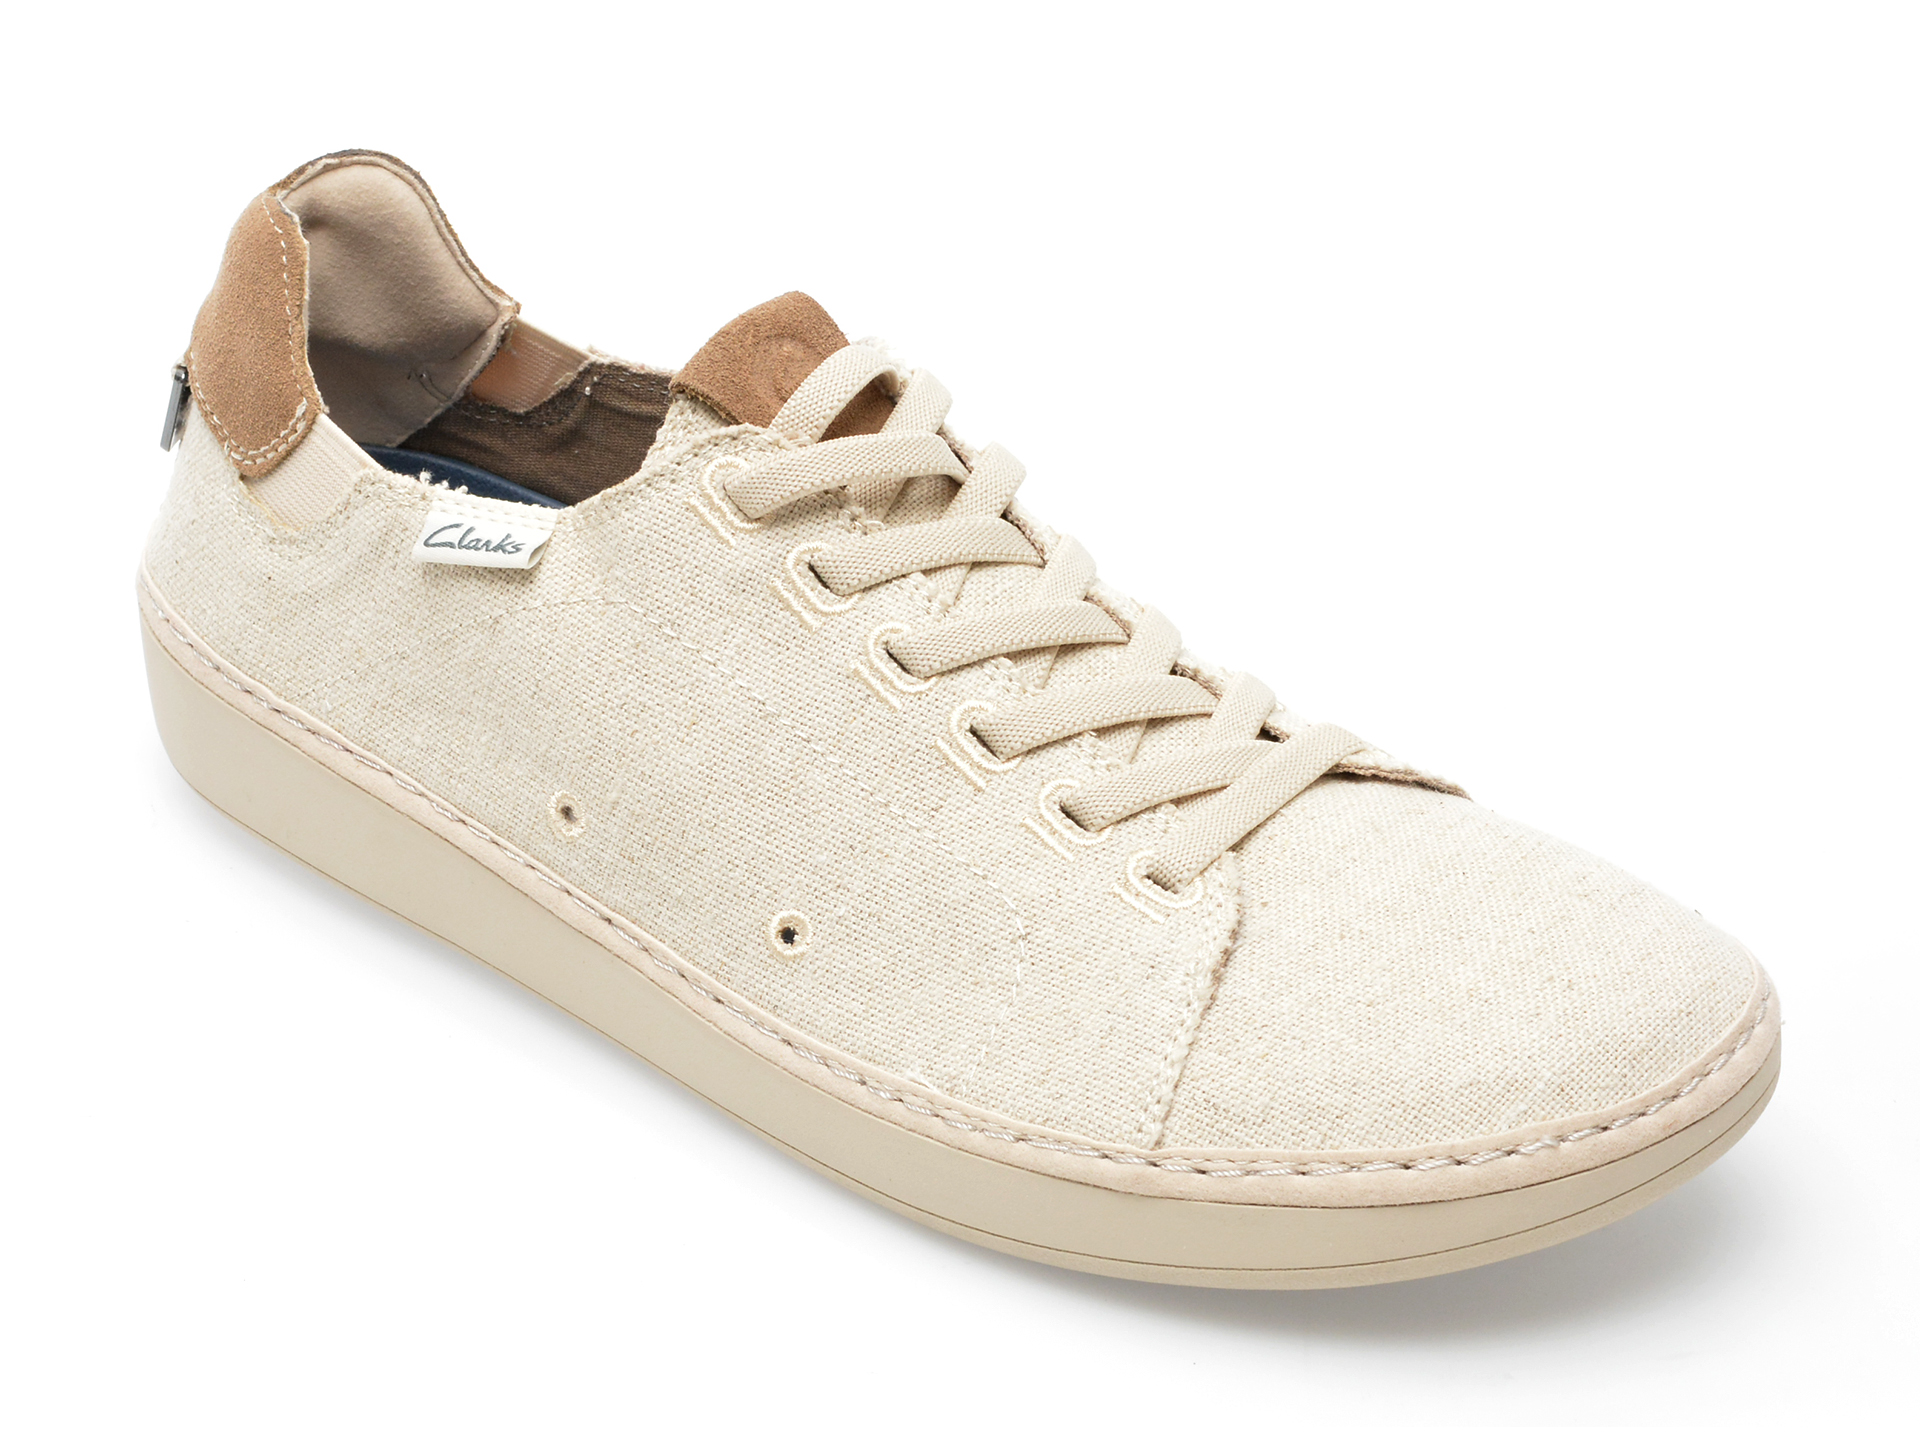 Pantofi CLARKS bej, HIGLEY LACE 0912, din material textil /barbati/pantofi imagine super redus 2022